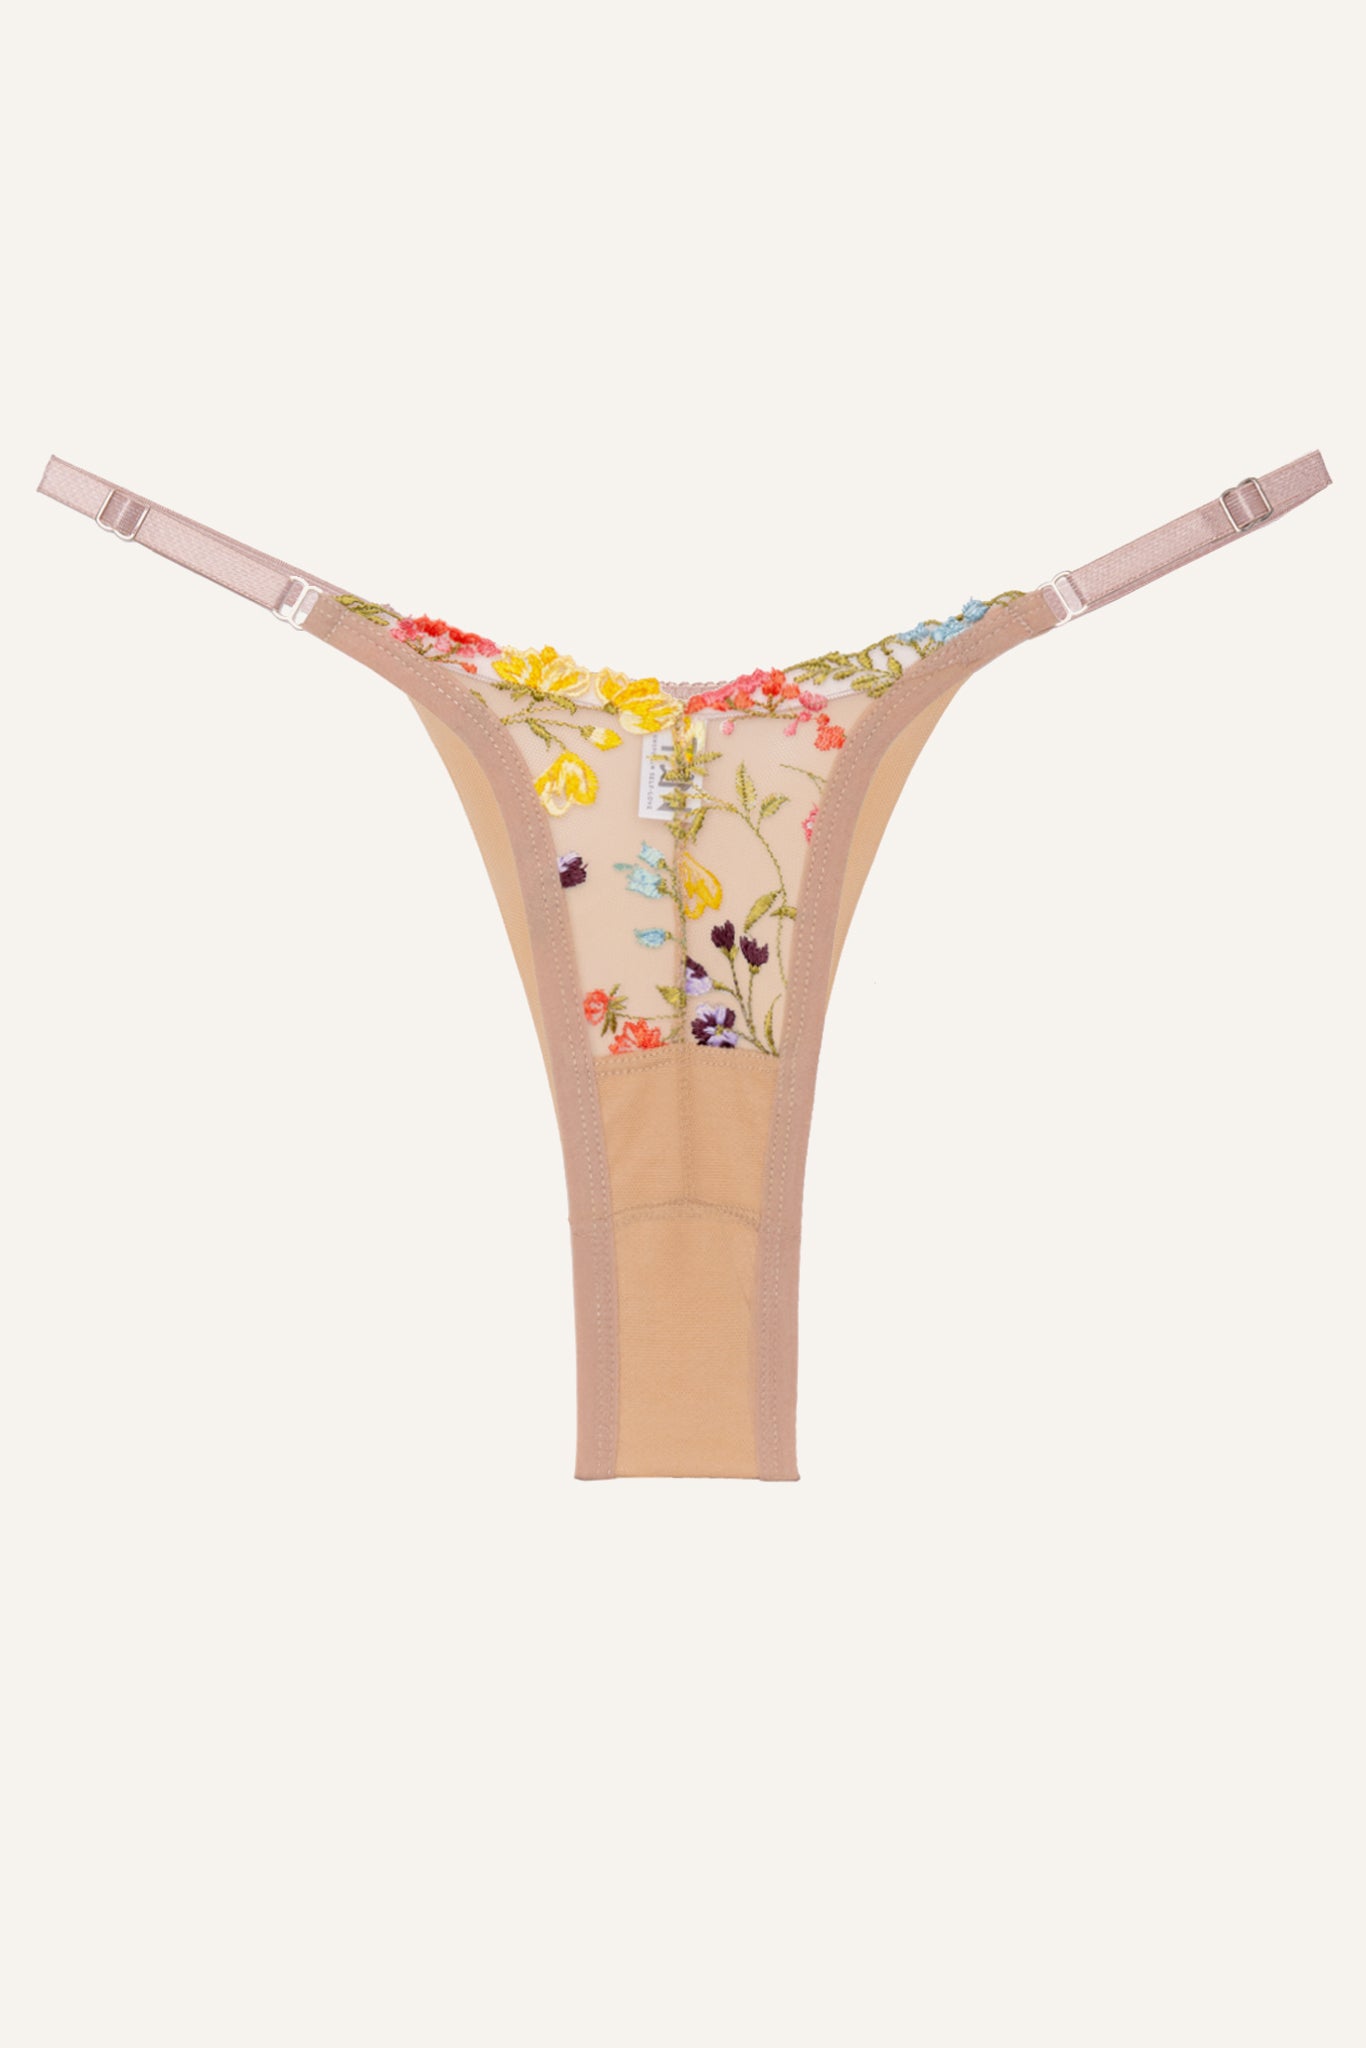 Toru & Naoko lingerie - Malva floral thong